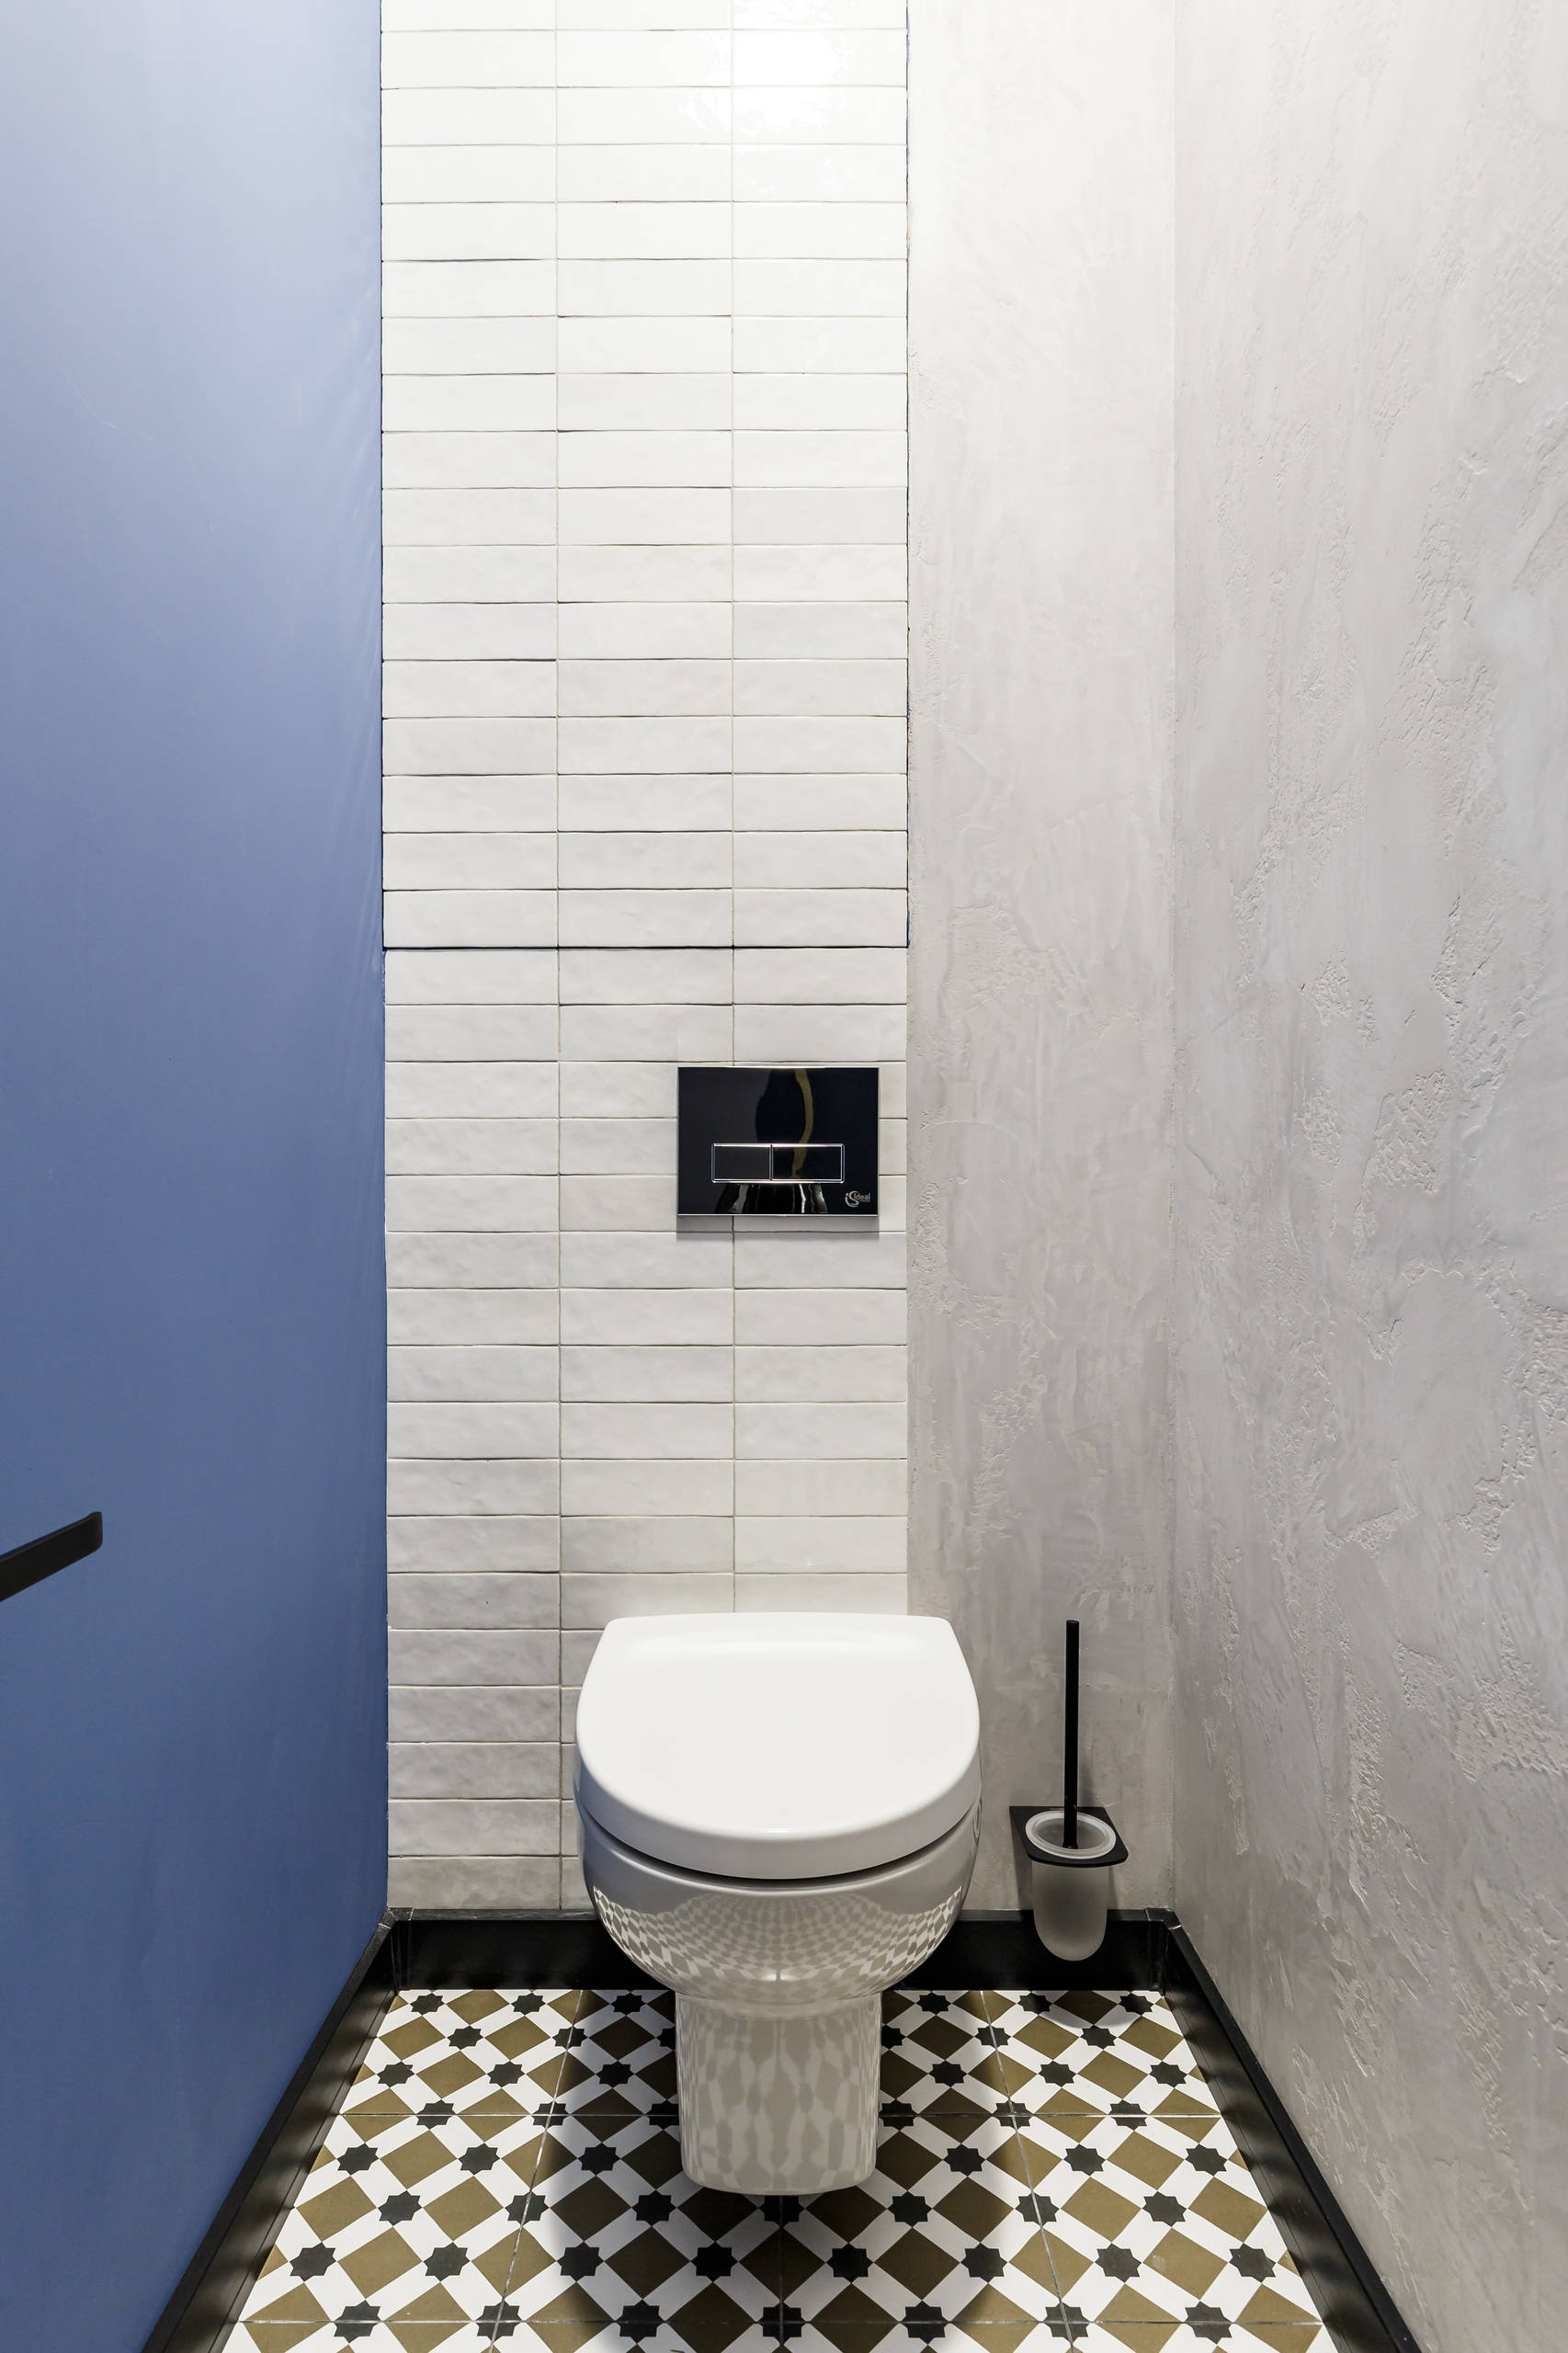 Khu vực phòng tắm và nhà vệ sinh được bố trí ngay bên hông phòng ngủ, thuận tiện cho nhu cầu sử dụng của gia chủ. Căn phòng sử dụng 2 gam màu trắng - xanh lam để tạo sự khác biệt với các khu vực còn lại trong nhà.